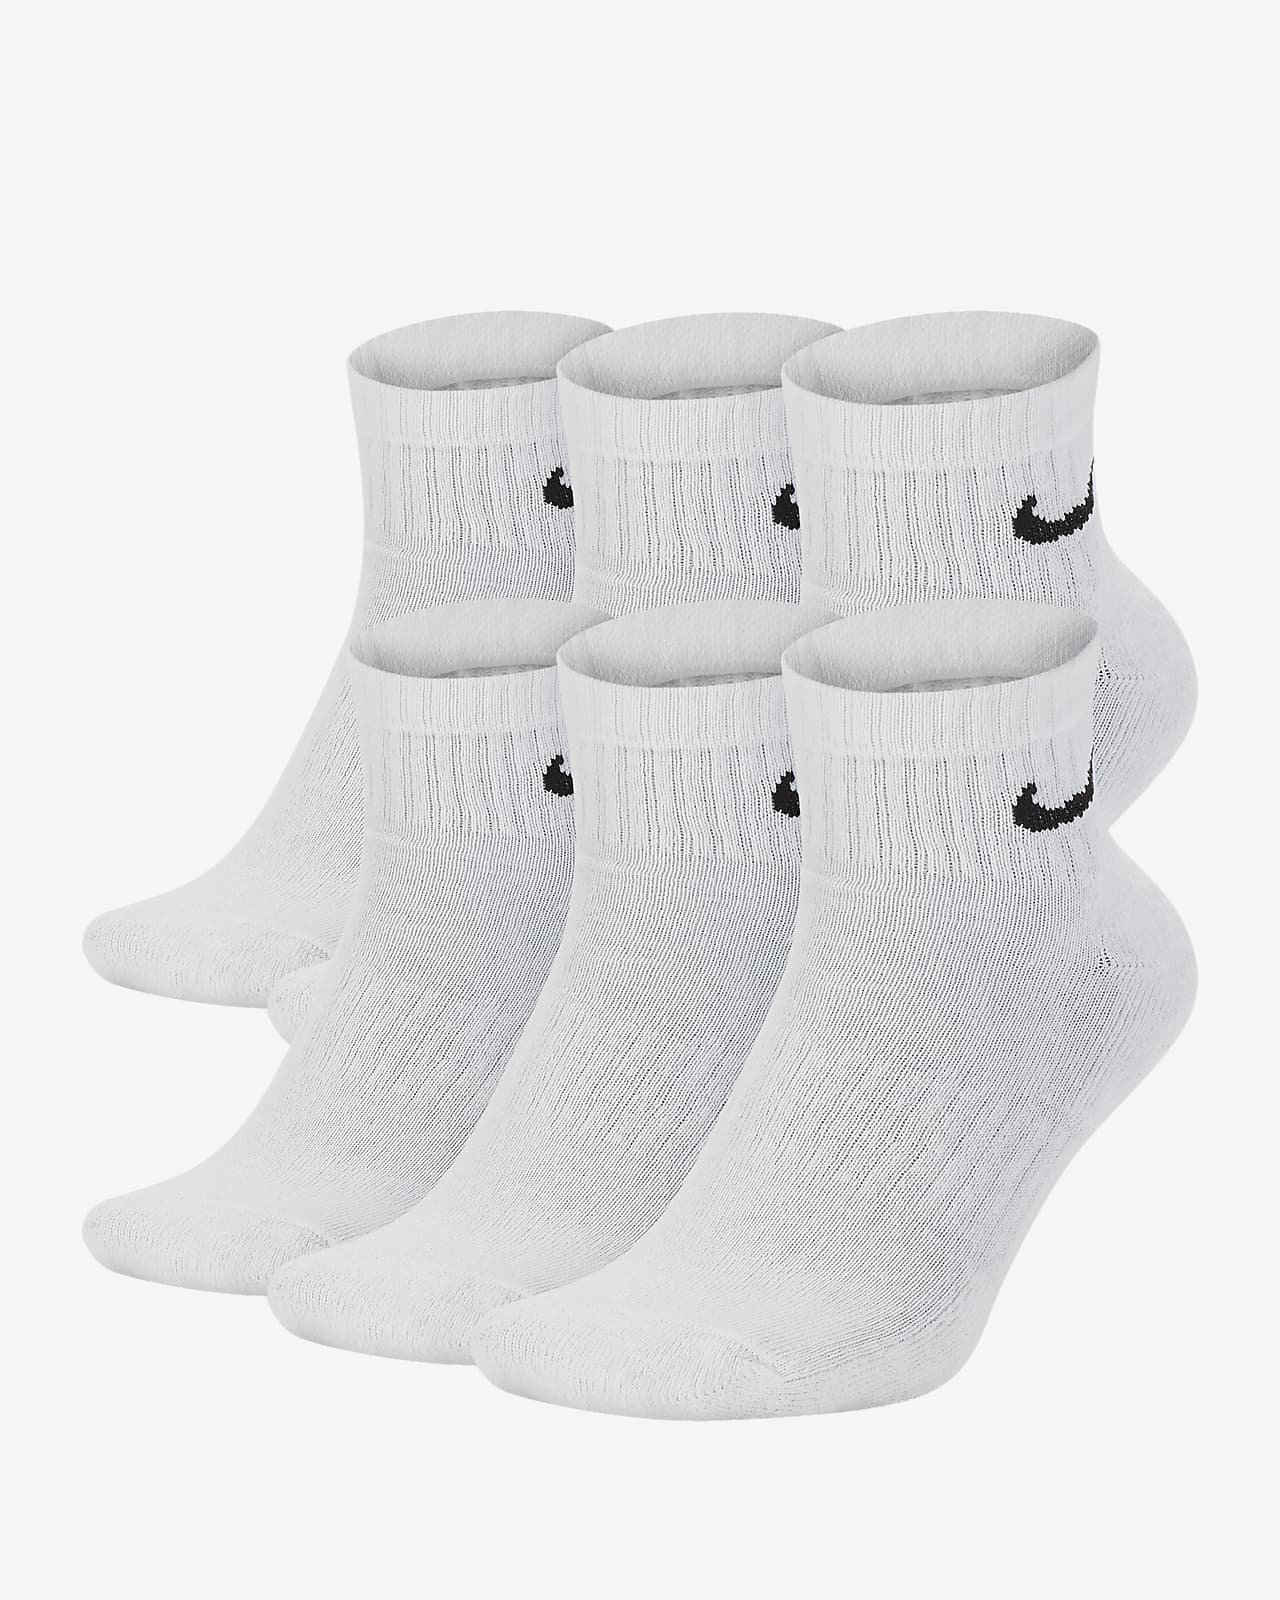 Calcetines de entrenamiento cortos Nike Everyday Cushioned (6 pares)